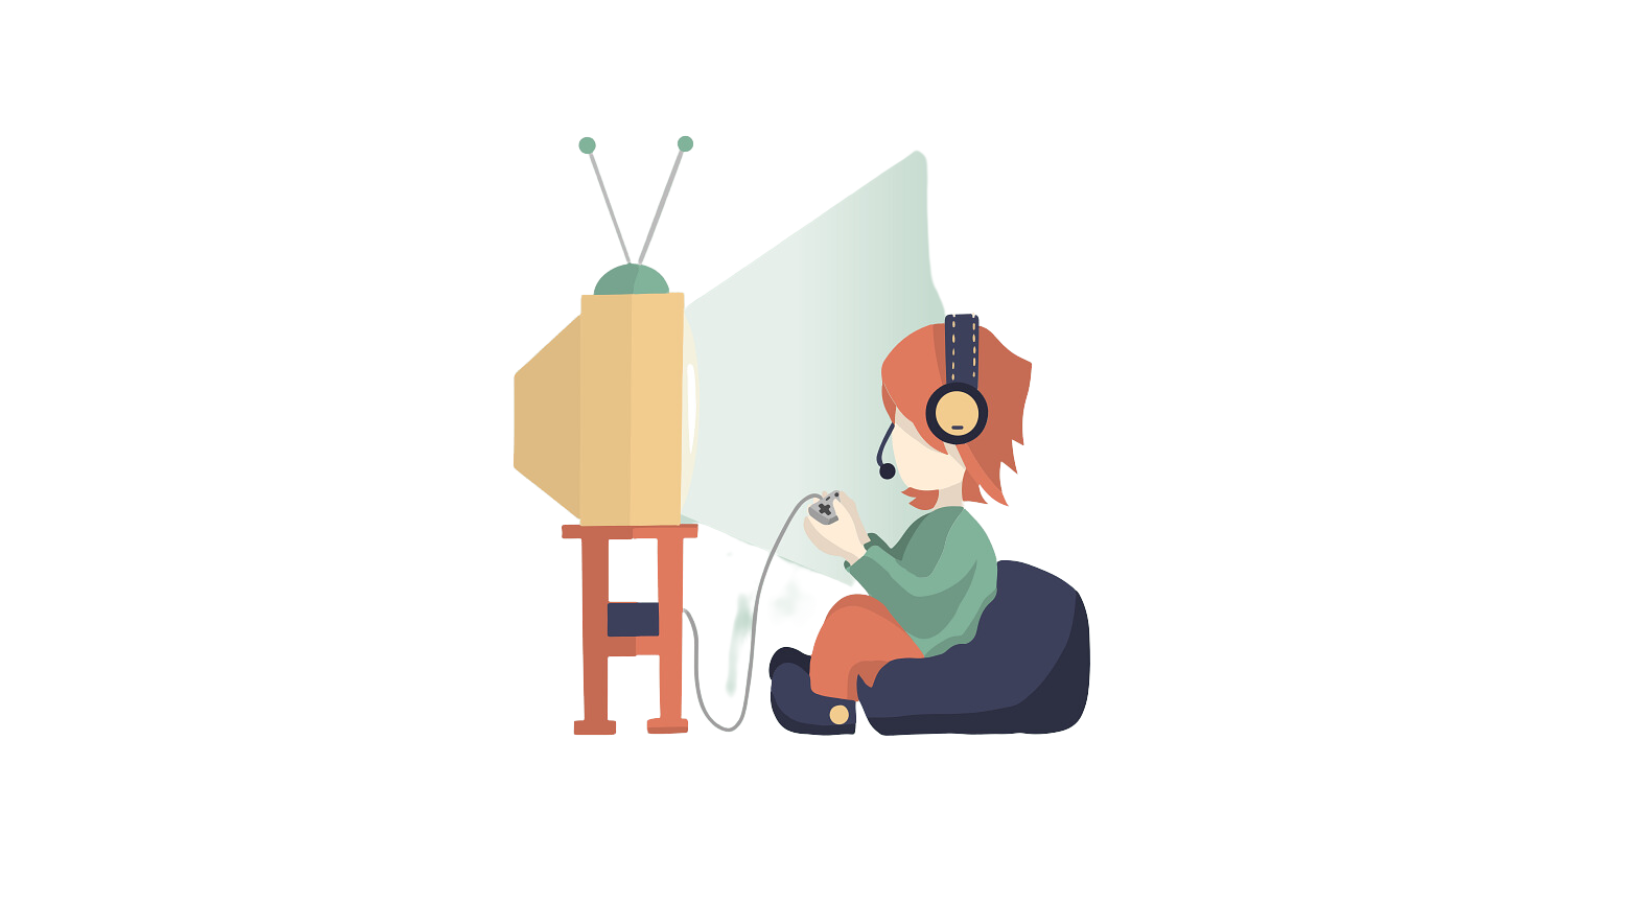 Piirretty ihminen istuu säkkituolissa ja pelaa konsolipeliä television ääressä.